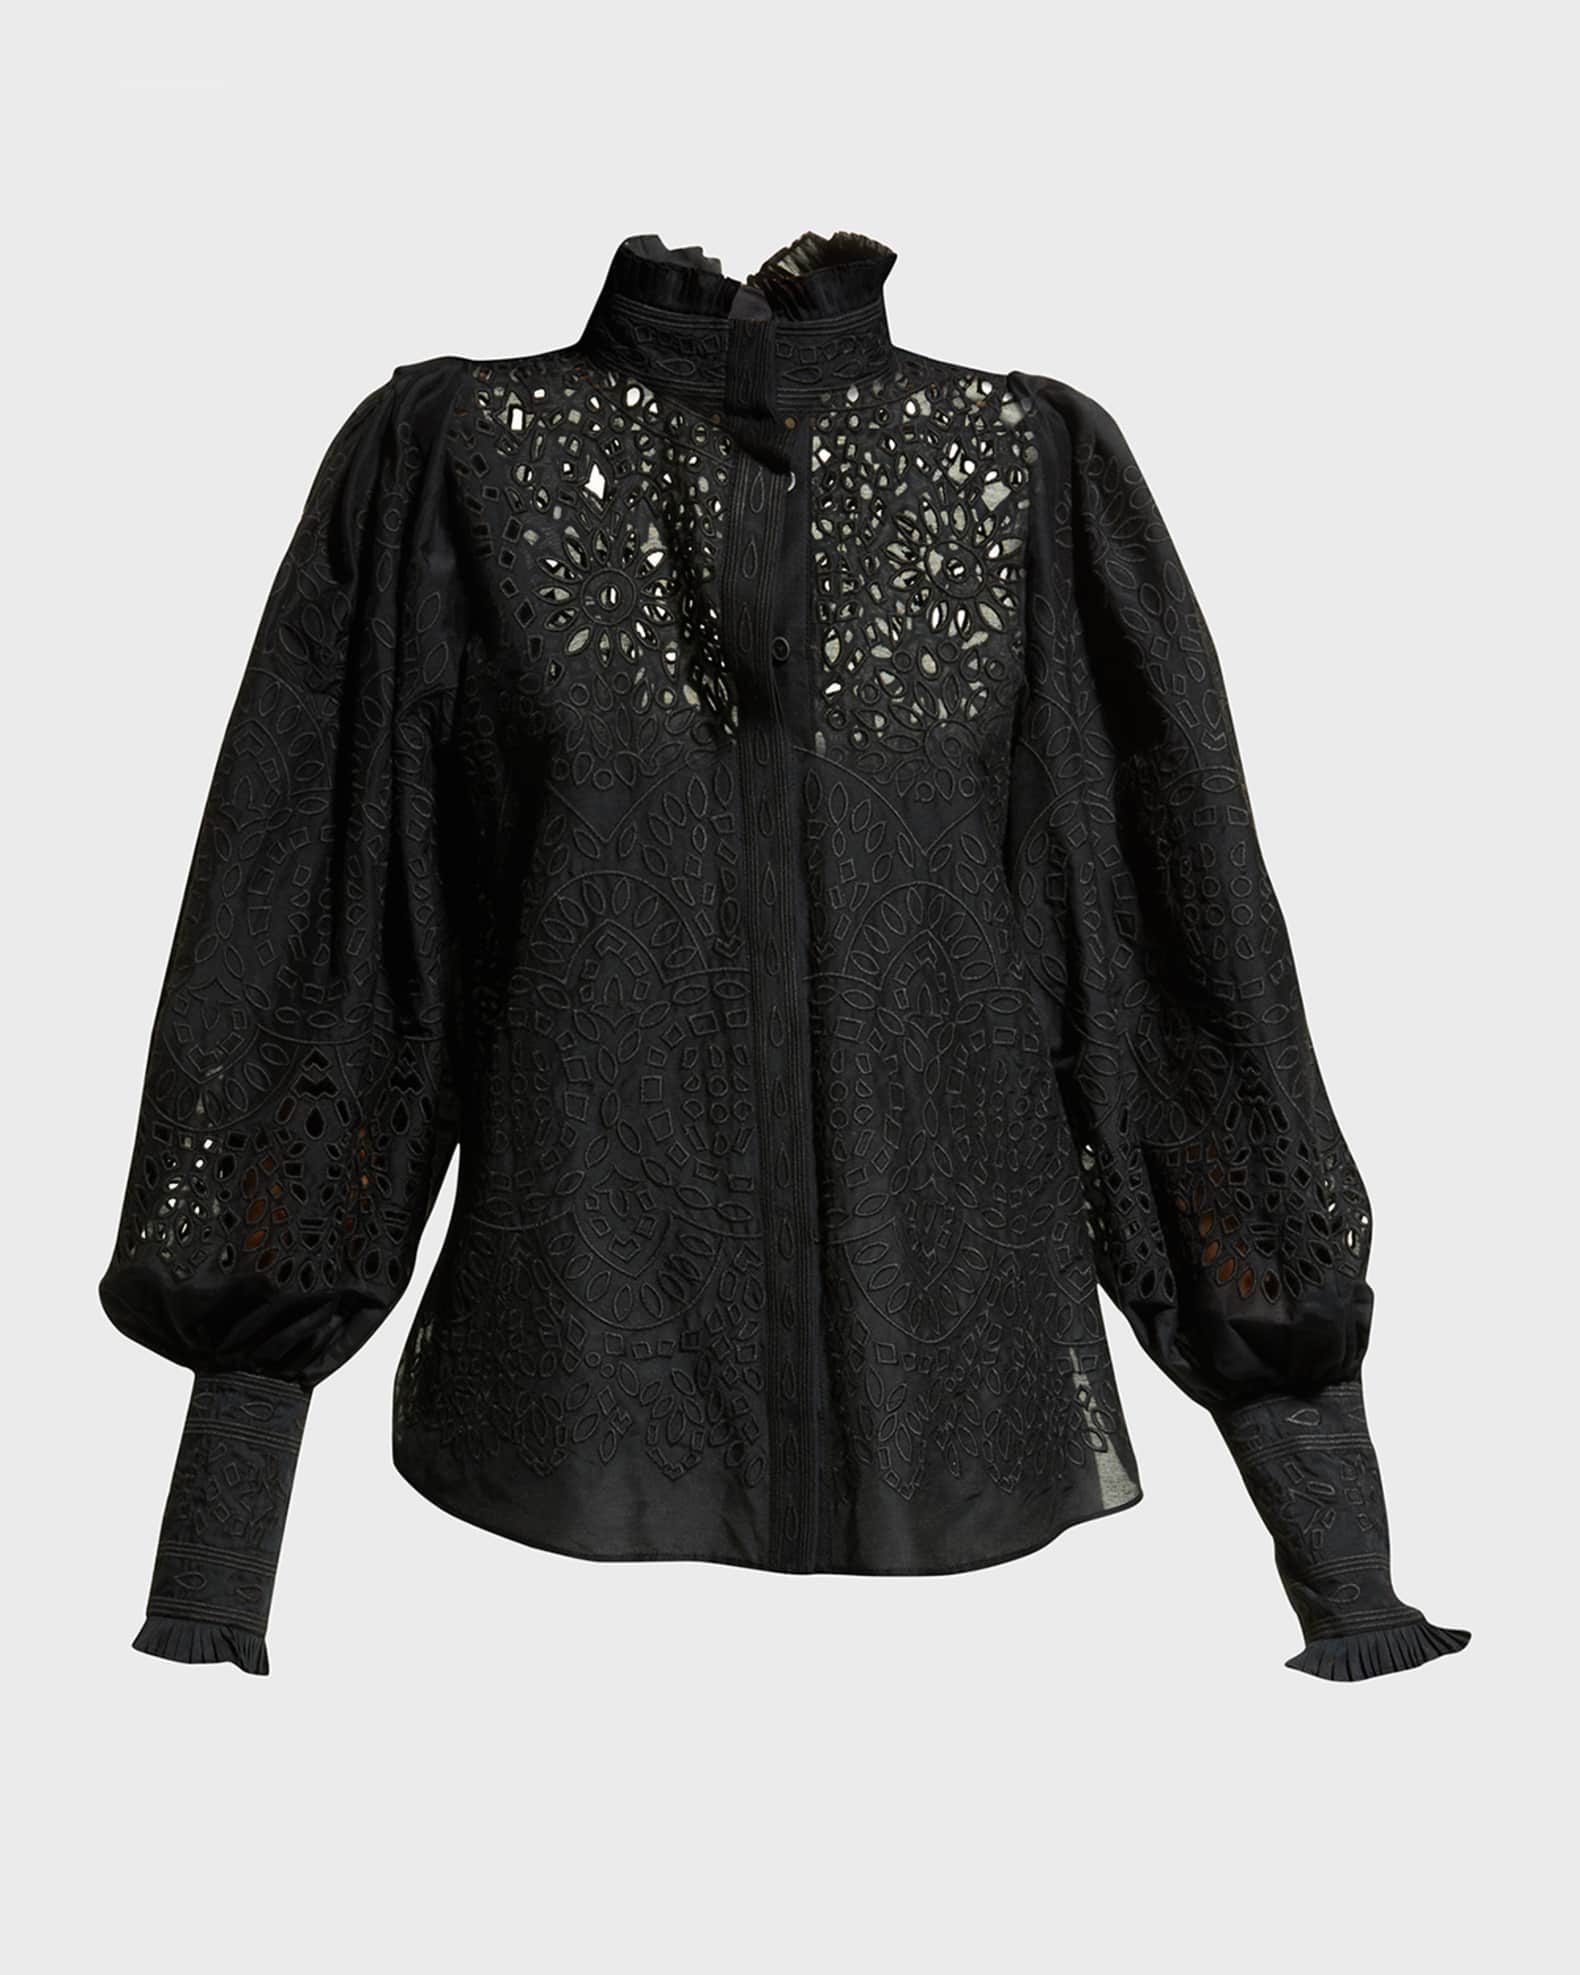 Kobi Halperin Ivana Embroidered Button-Front Blouse | Neiman Marcus